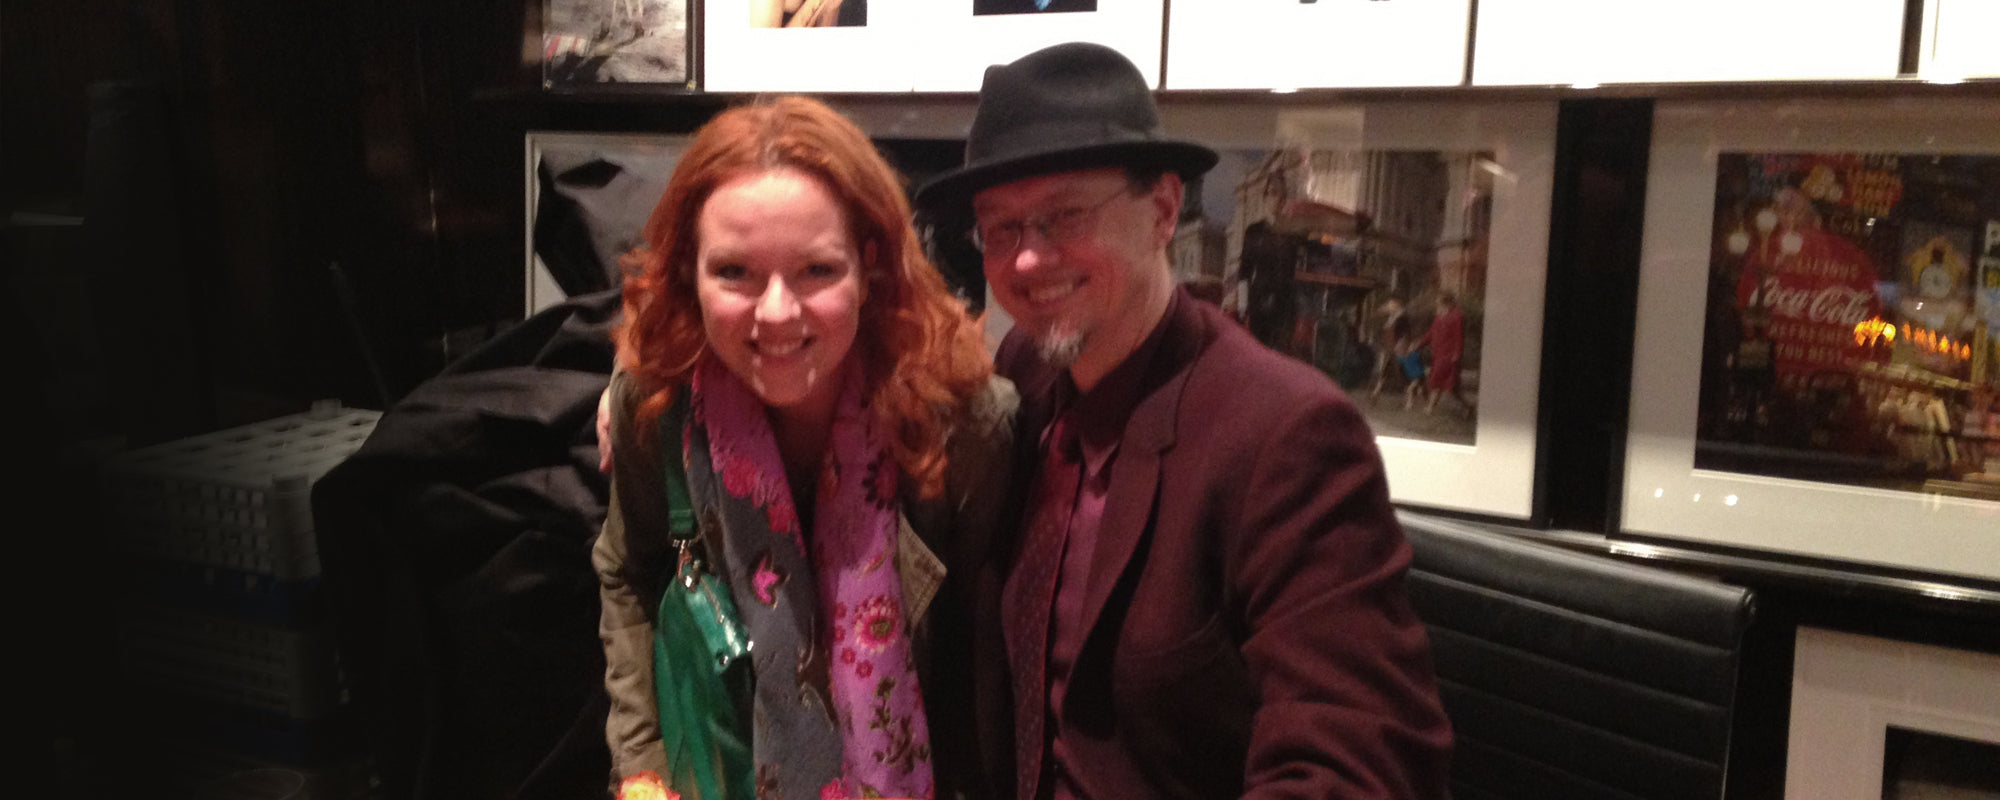 De dag dat ik mijn favoriete kunstenaar Mark Ryden ontmoette in Parijs